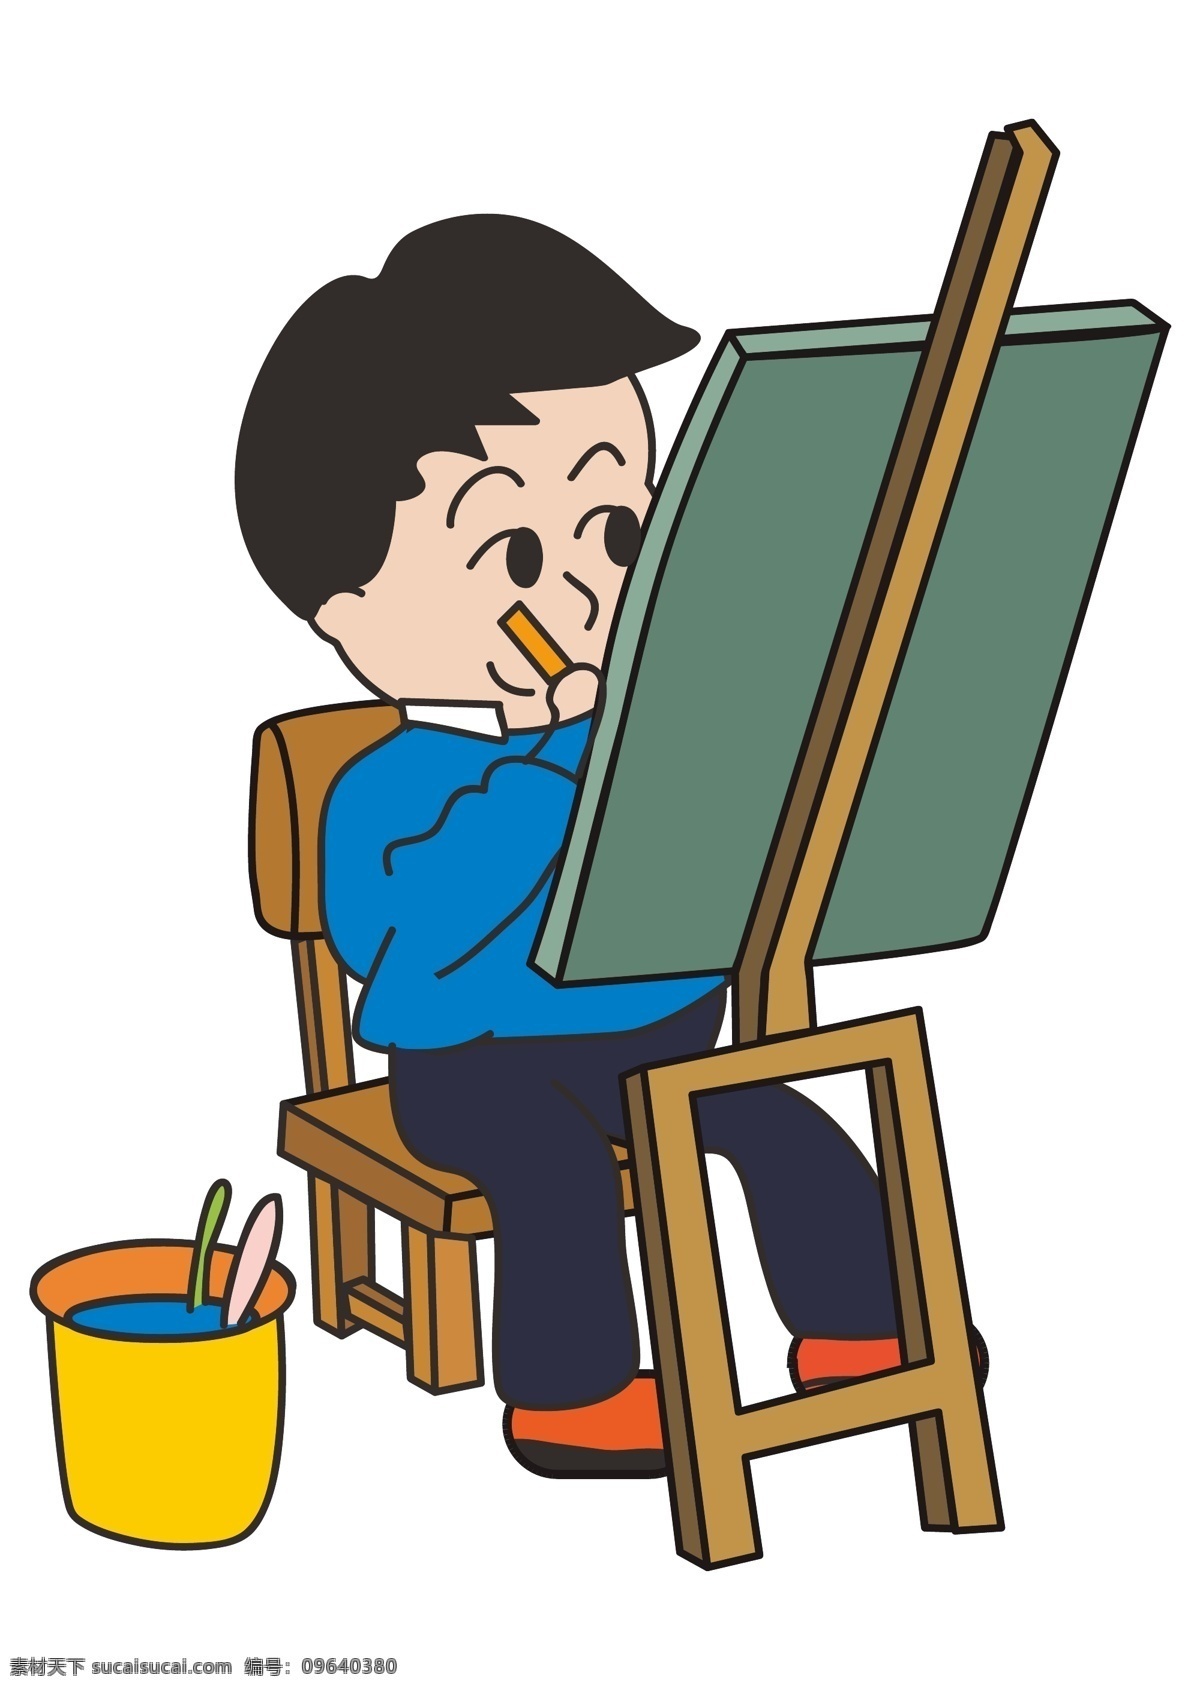 假期 扁平 旅游 写生 教育 美术培训 绘画 孩子 学生 卡通 形象 培训 卡通形象 美术 艺术 画画 培训班 特长 学校 暑假